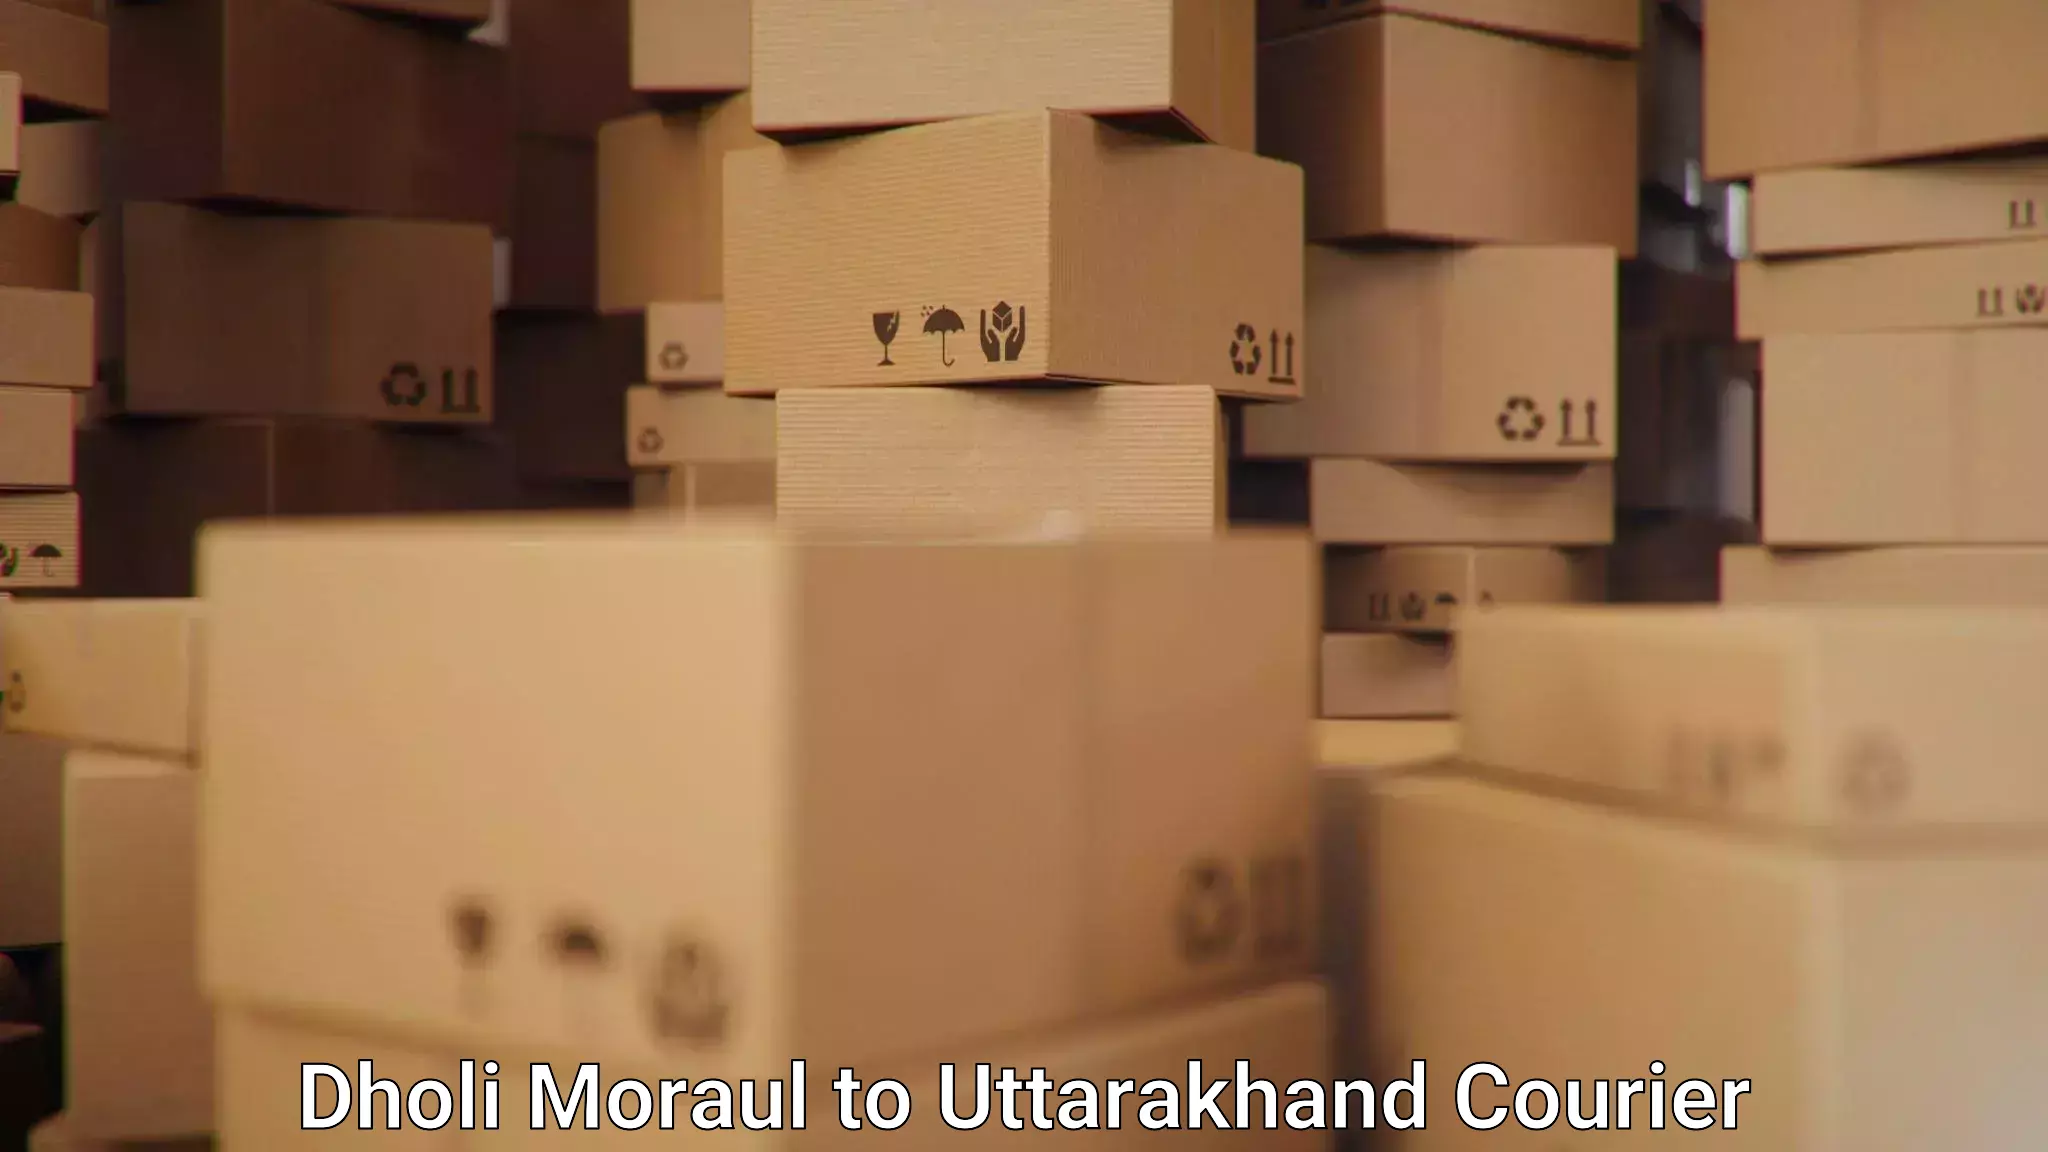 Global shipping solutions Dholi Moraul to Kashipur